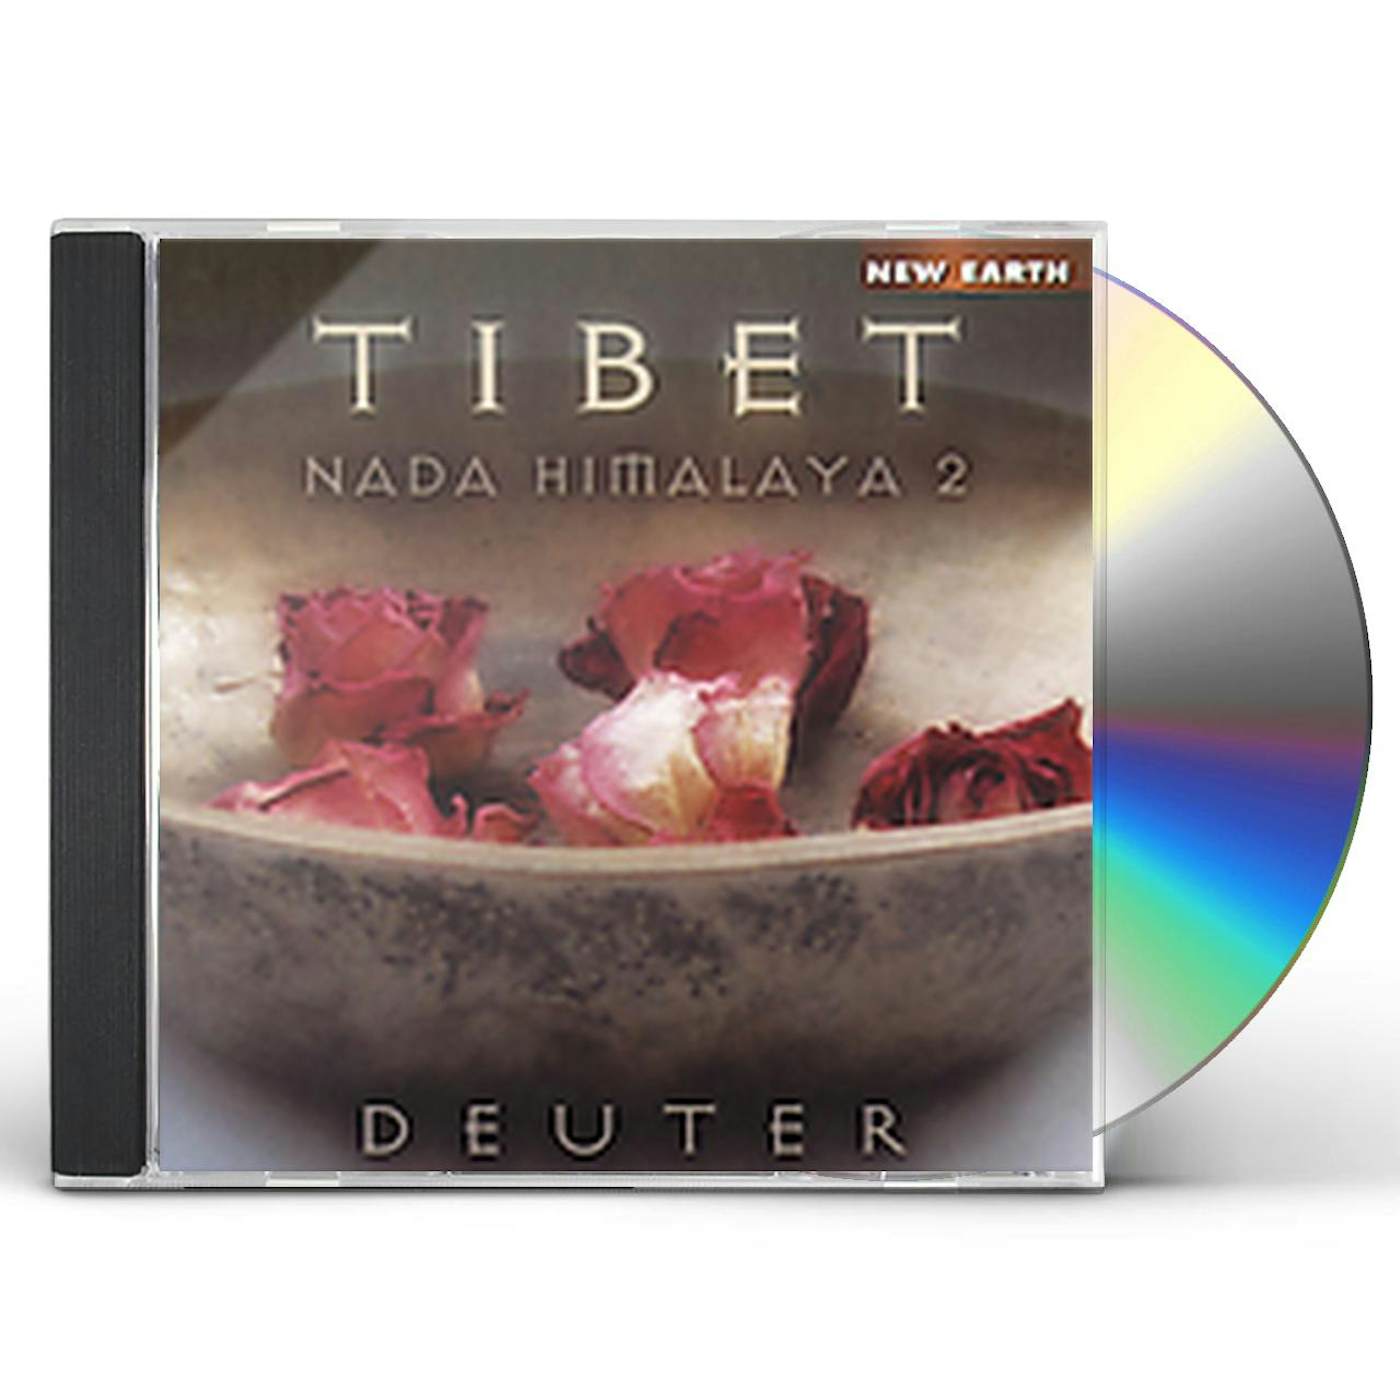 Deuter TIBET: NADA HIMALAYA 2 CD